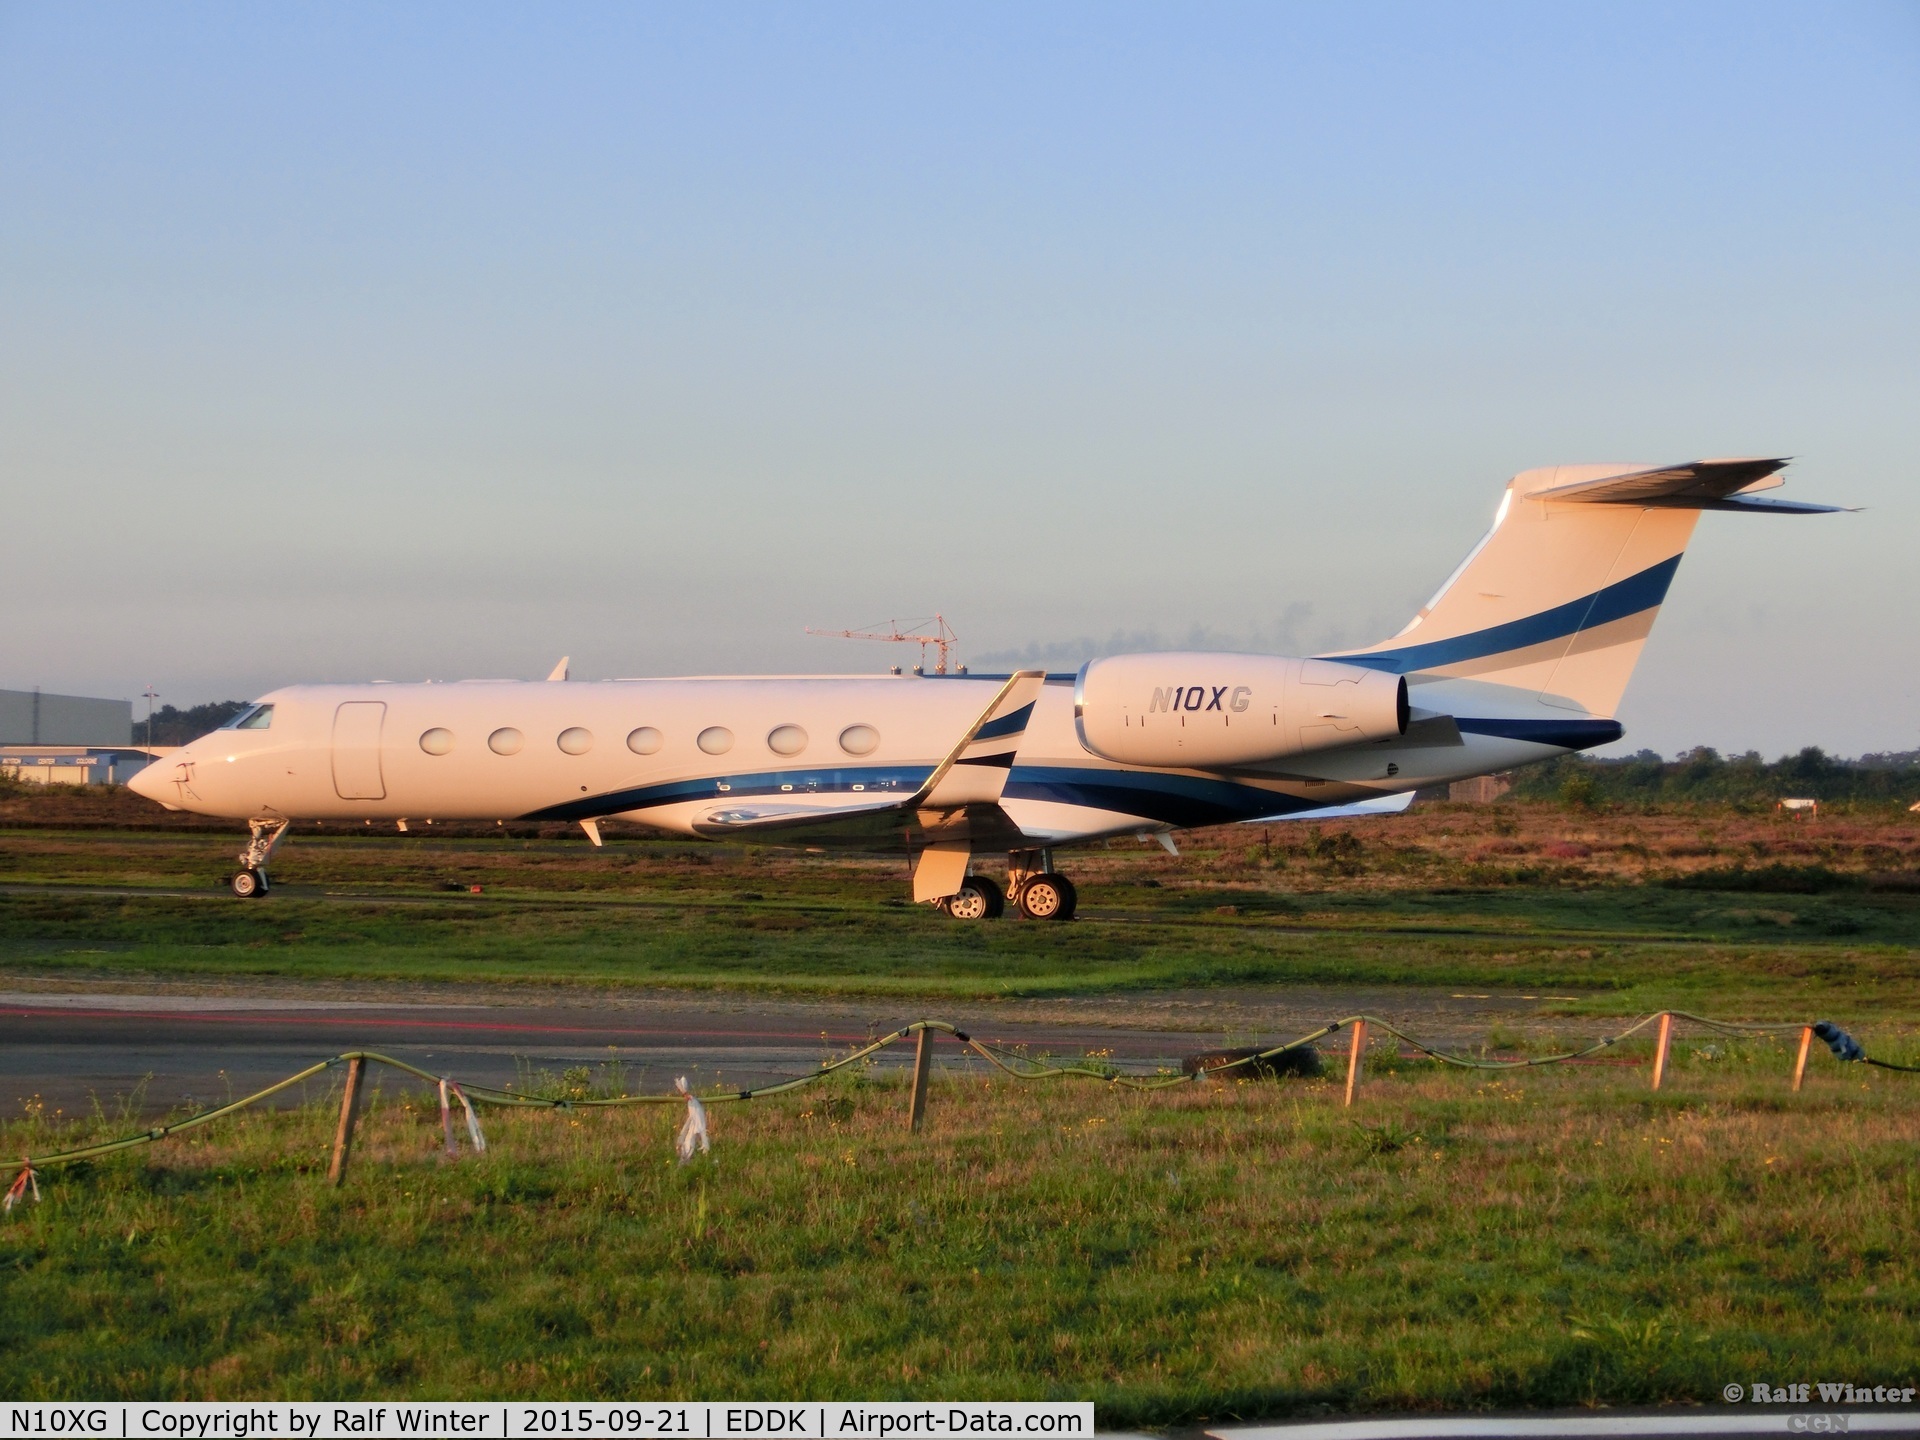 N10XG, 2008 Gulfstream Aerospace GV-SP (G550) C/N 5186, Gulfstream Aerospace GV-SP G550 - Bank of Utah Trustee - N10XG - 21.09.2015 - CGN